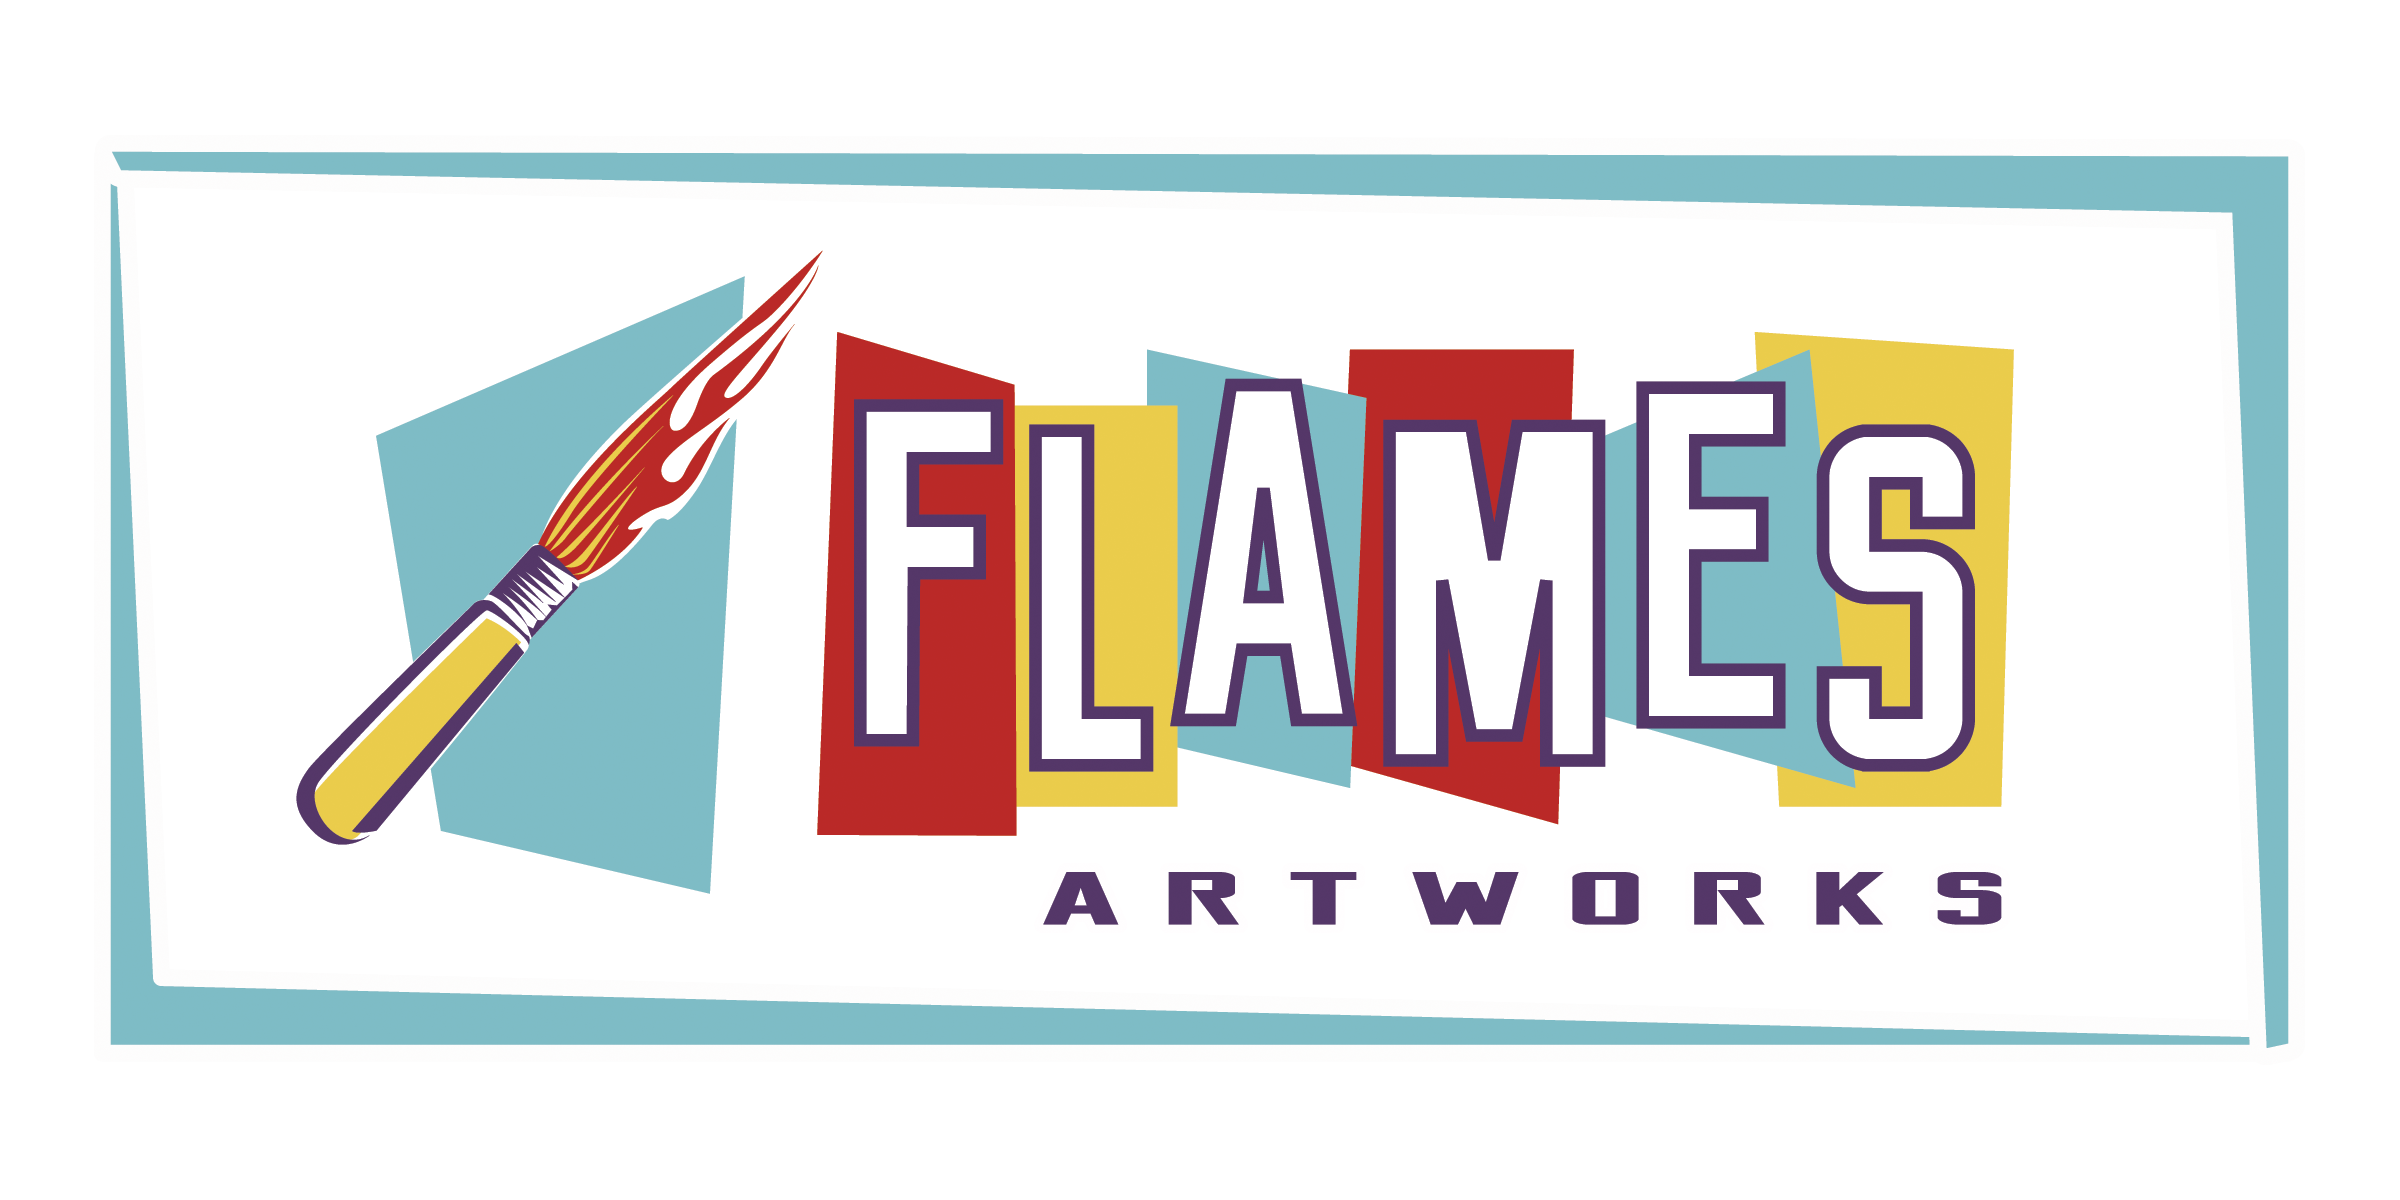 Flames Artworks